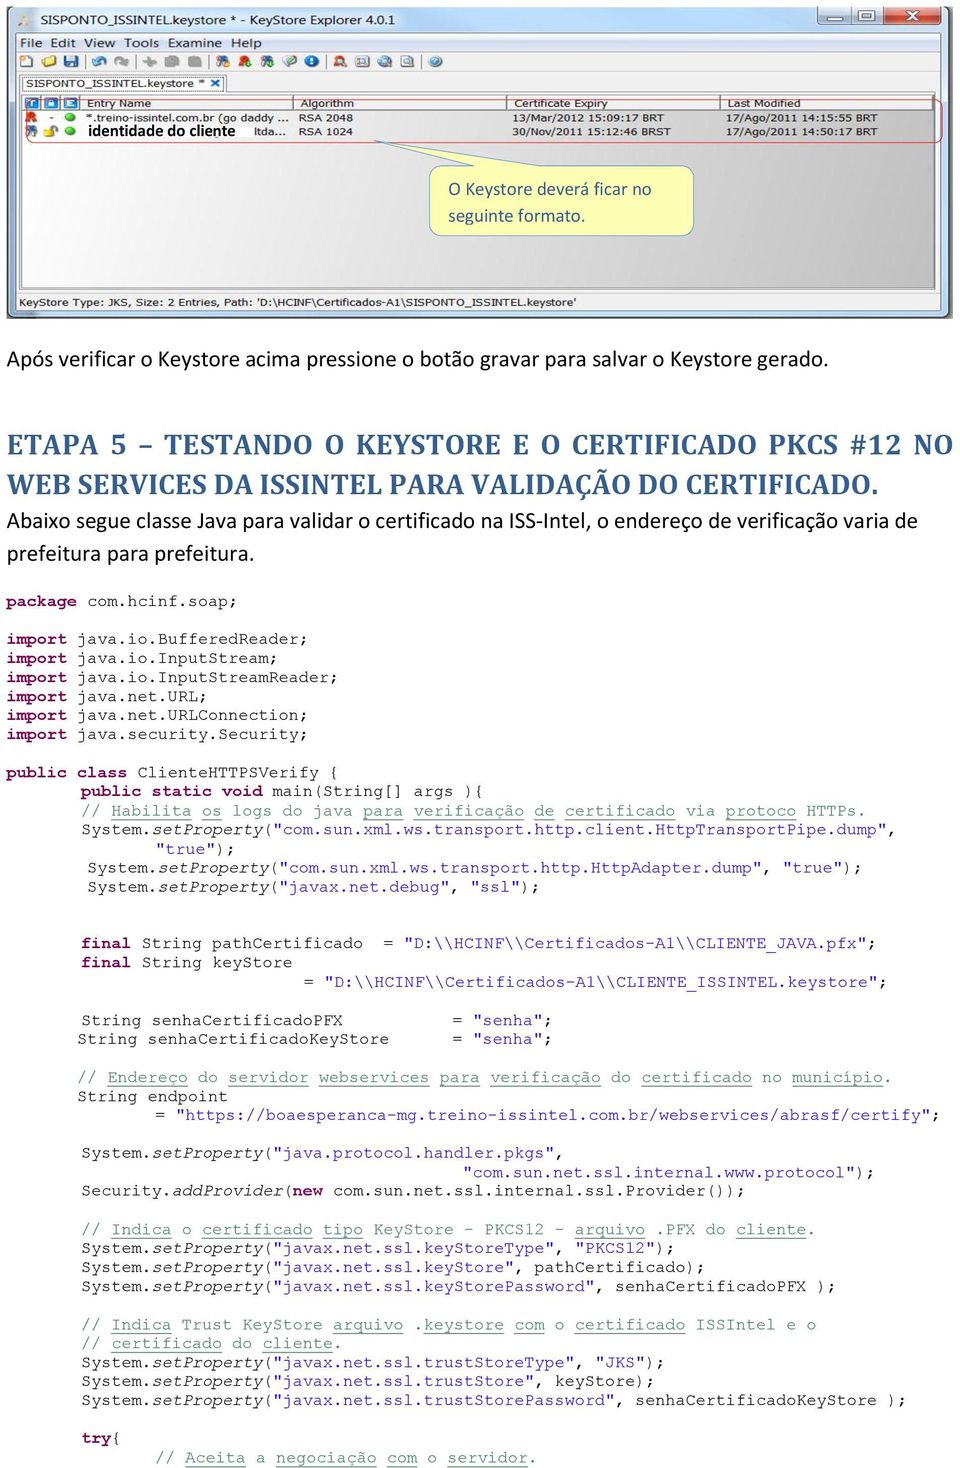 Abaixo segue classe Java para validar o certificado na ISS-Intel, o endereço de verificação varia de prefeitura para prefeitura. package com.hcinf.soap; import java.io.bufferedreader; import java.io.inputstream; import java.